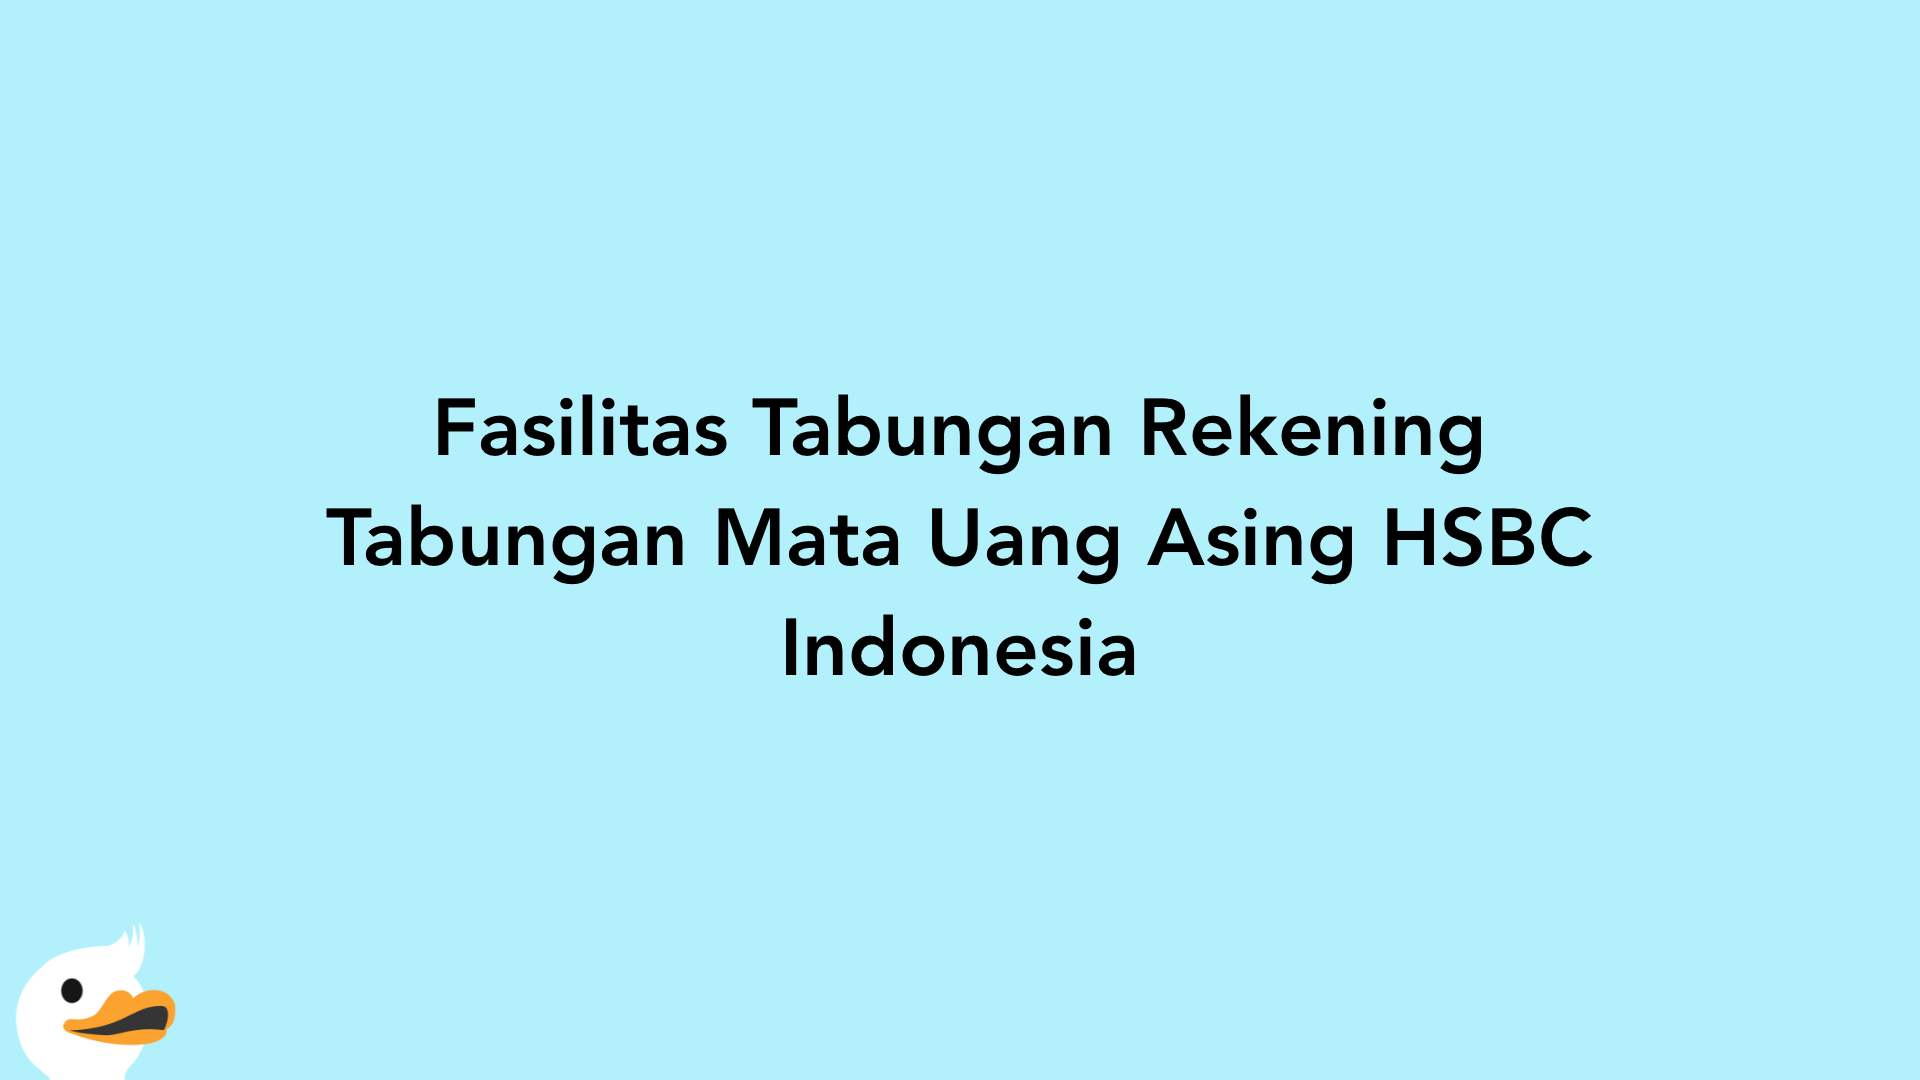 Fasilitas Tabungan Rekening Tabungan Mata Uang Asing HSBC Indonesia